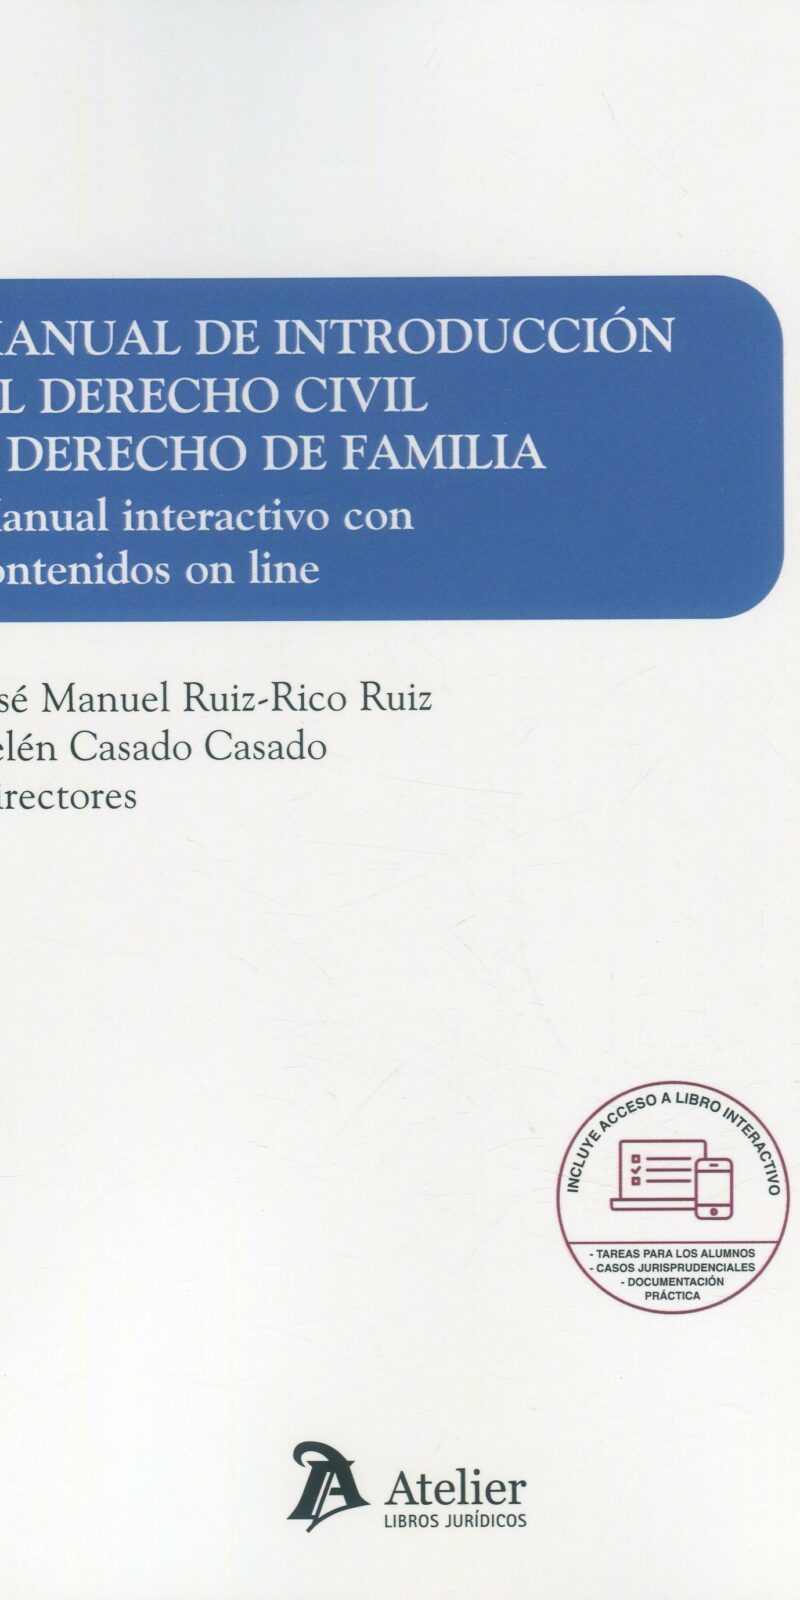 Manual de introducción al derecho civil y derecho de familia